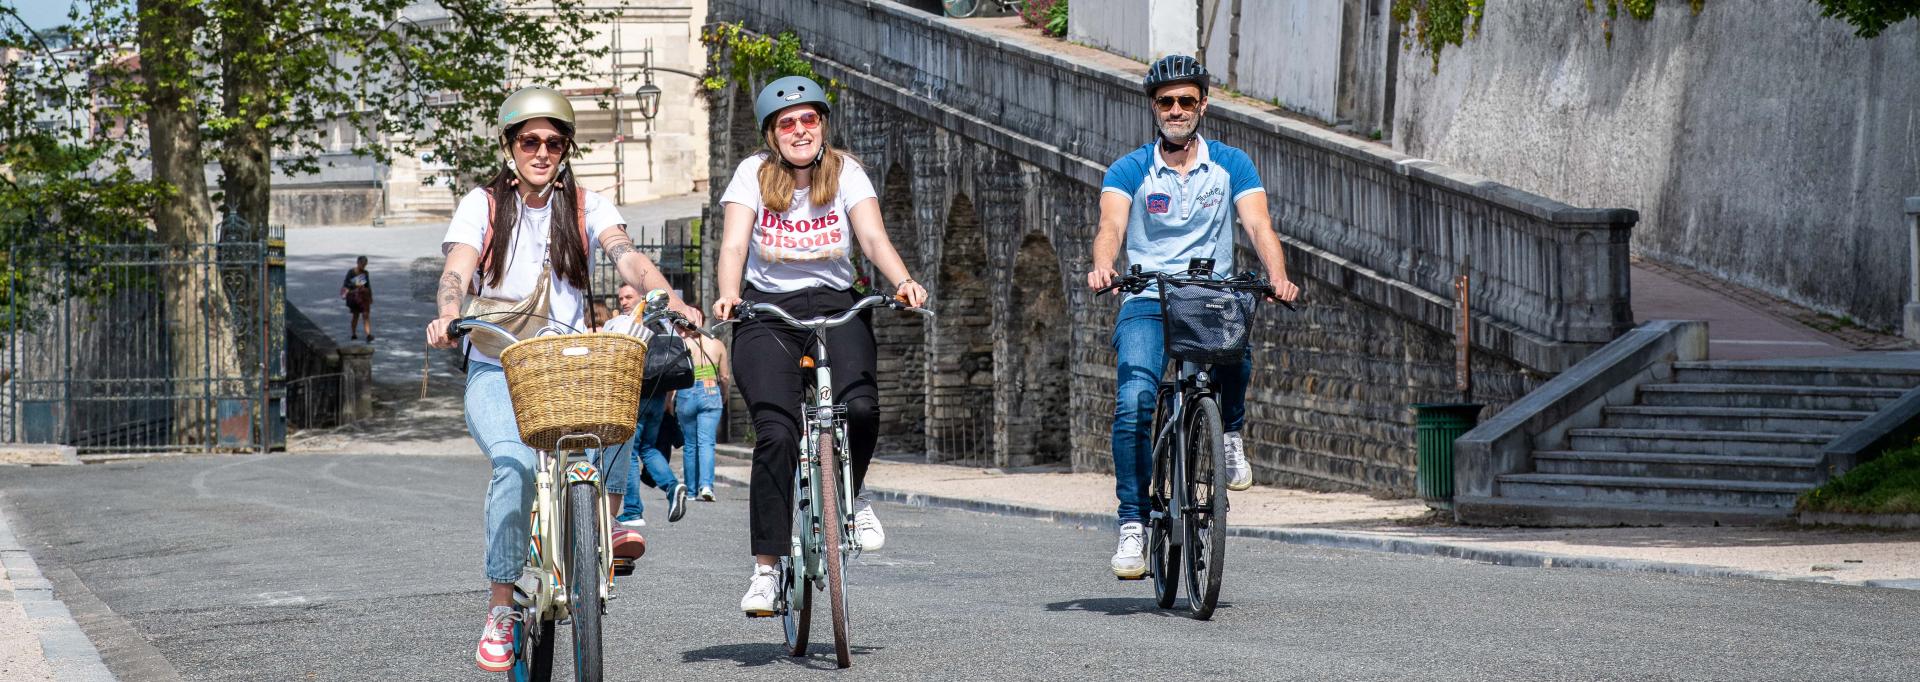 Trois personnes à vélo en ville 